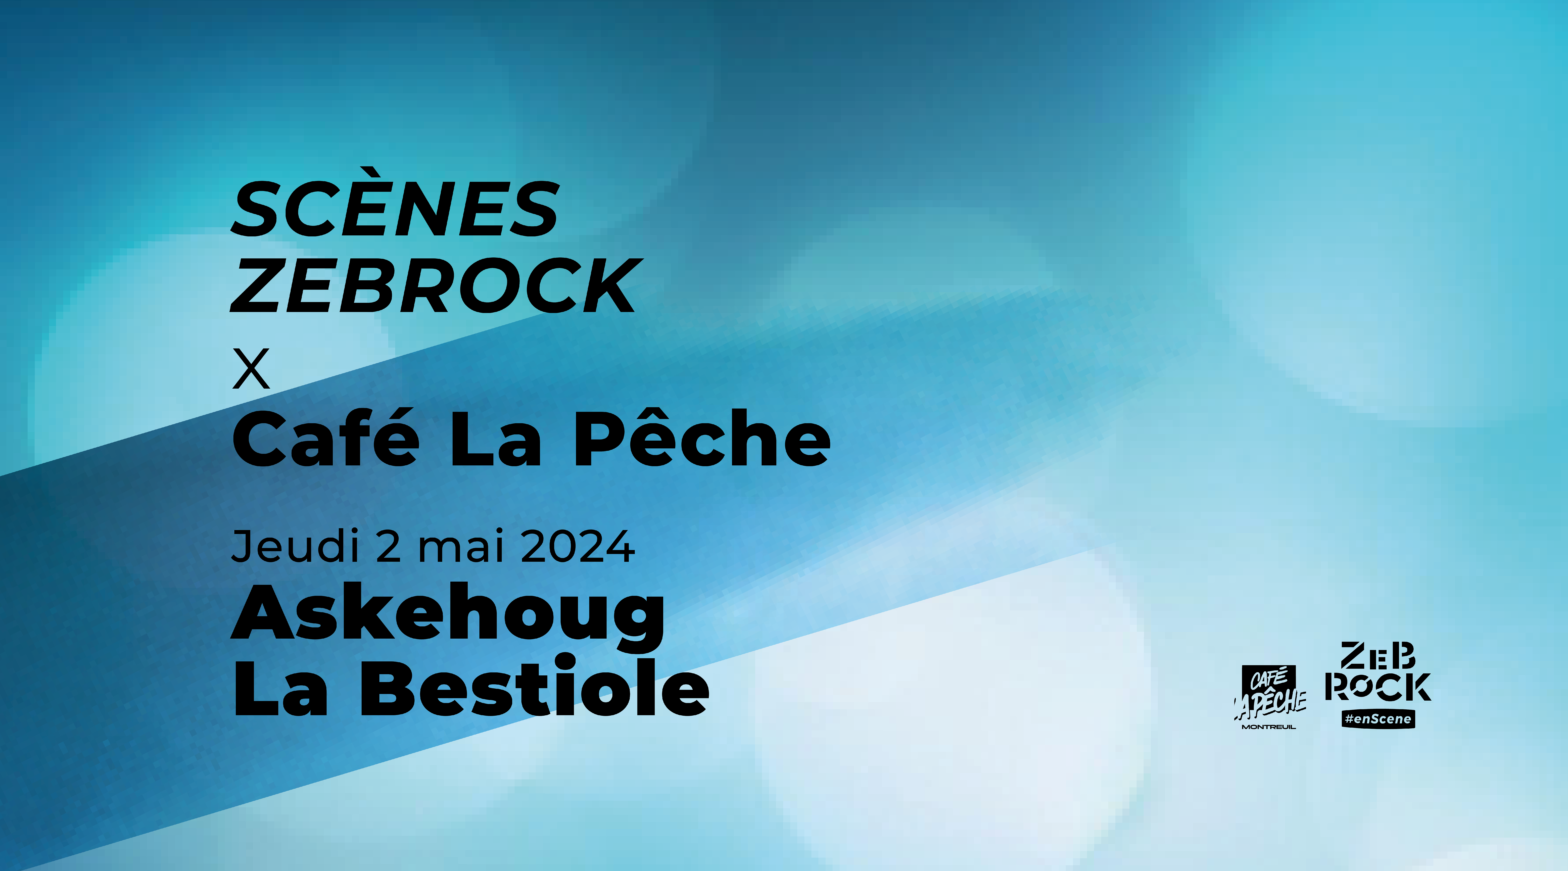 Scènes Zebrock x Café La Pêche | Askehoug + La Bestiole | 2 mai 2024